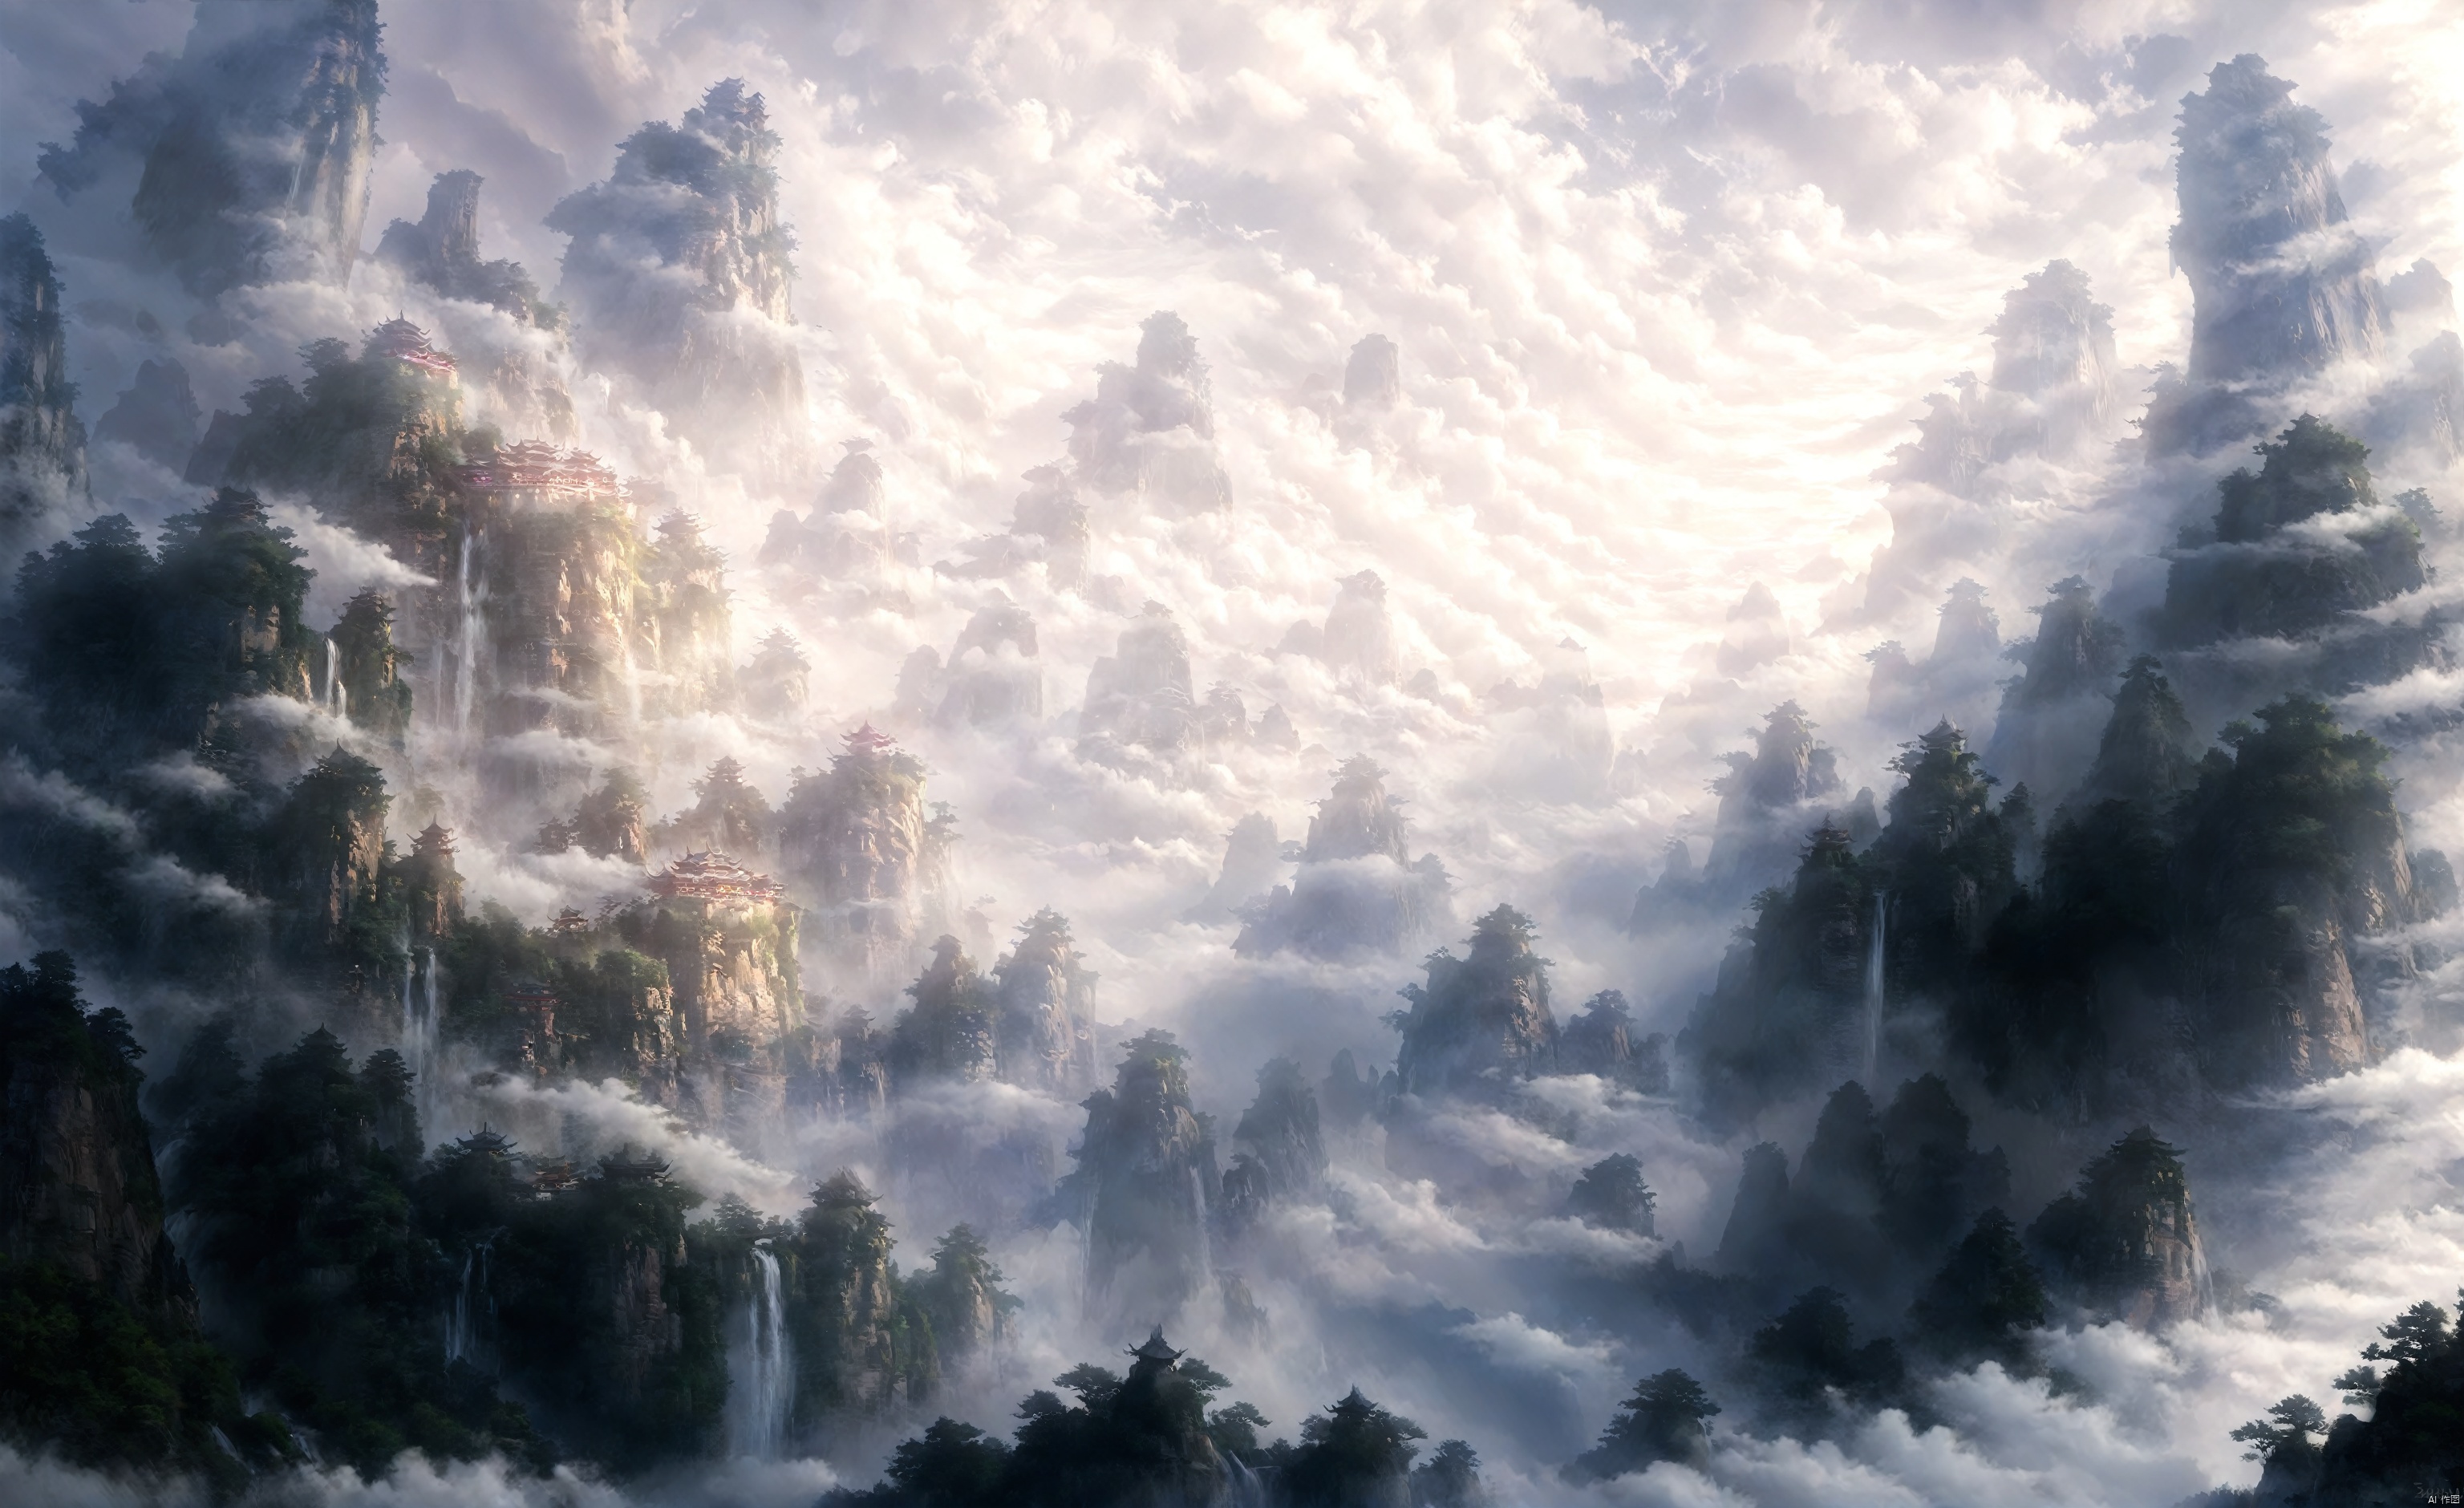 Fairyland, cloud, cloud, cloud, ((masterpiece)), mountain, Zhangjiajie, cloud, landscape, water, ((boutique)), sky, cloud, waterfall,. RPG, ananmoo